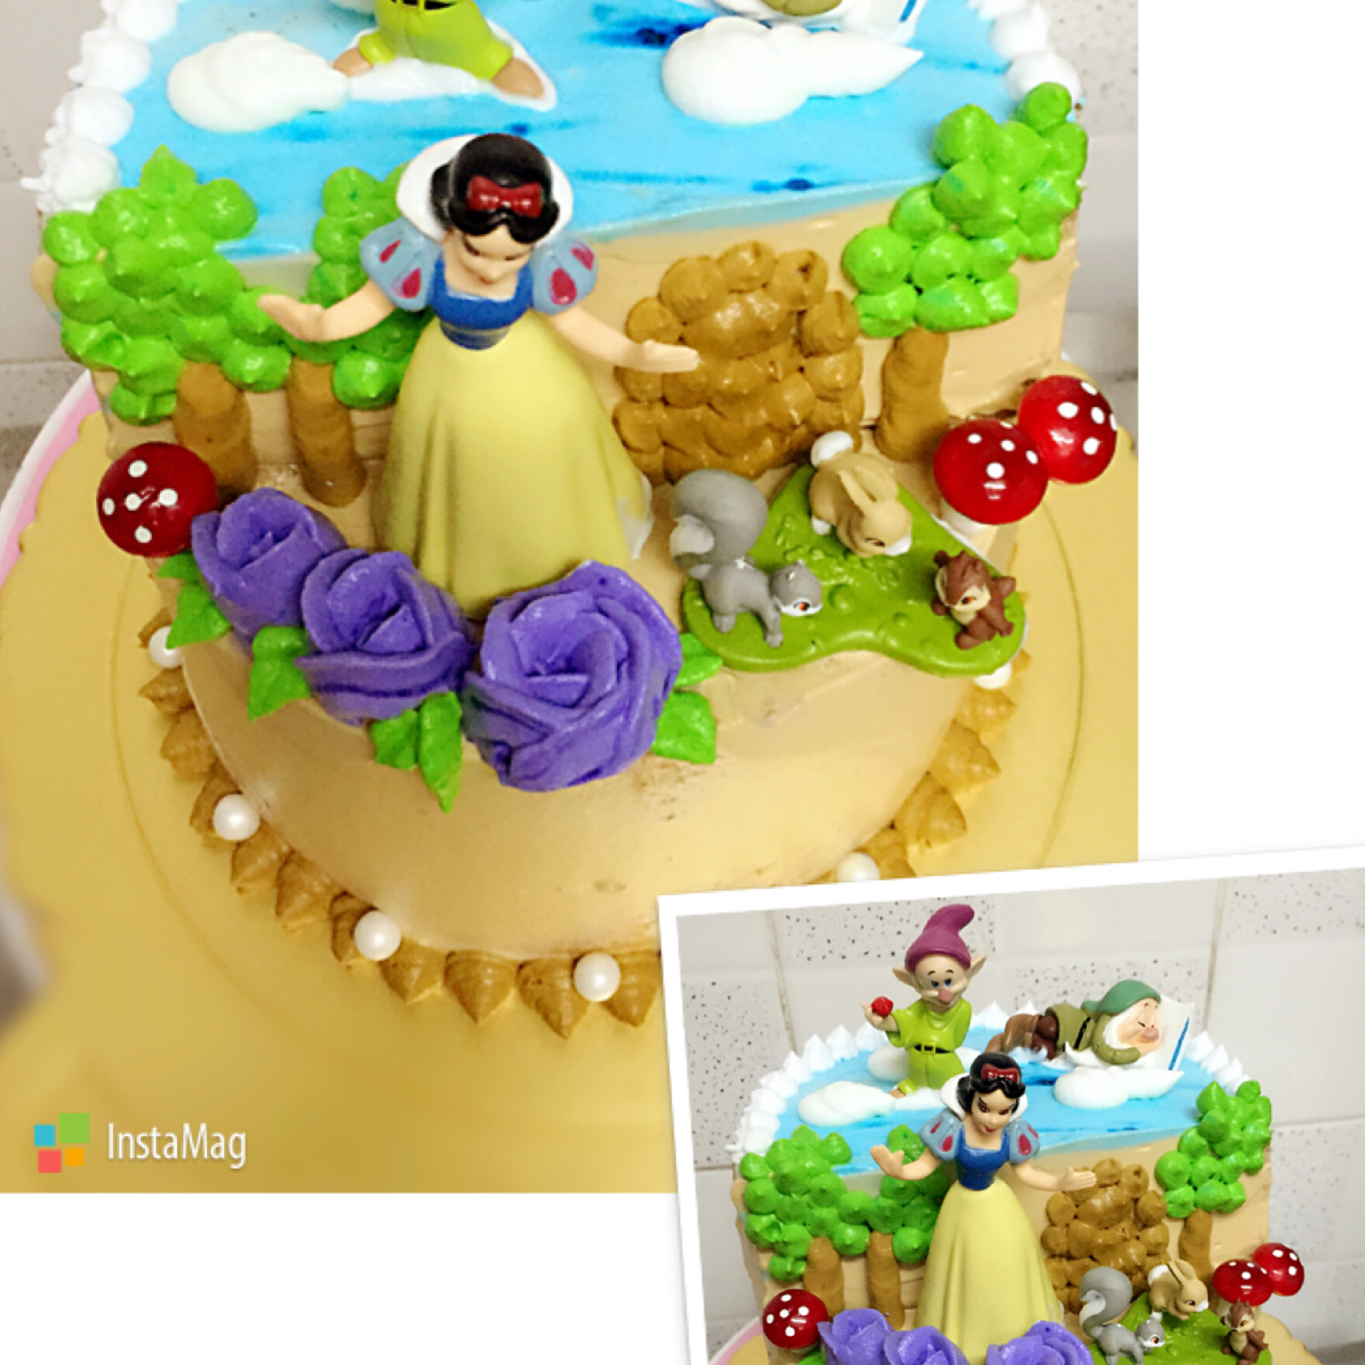 白雪公主生日蛋糕 公主场景蛋糕